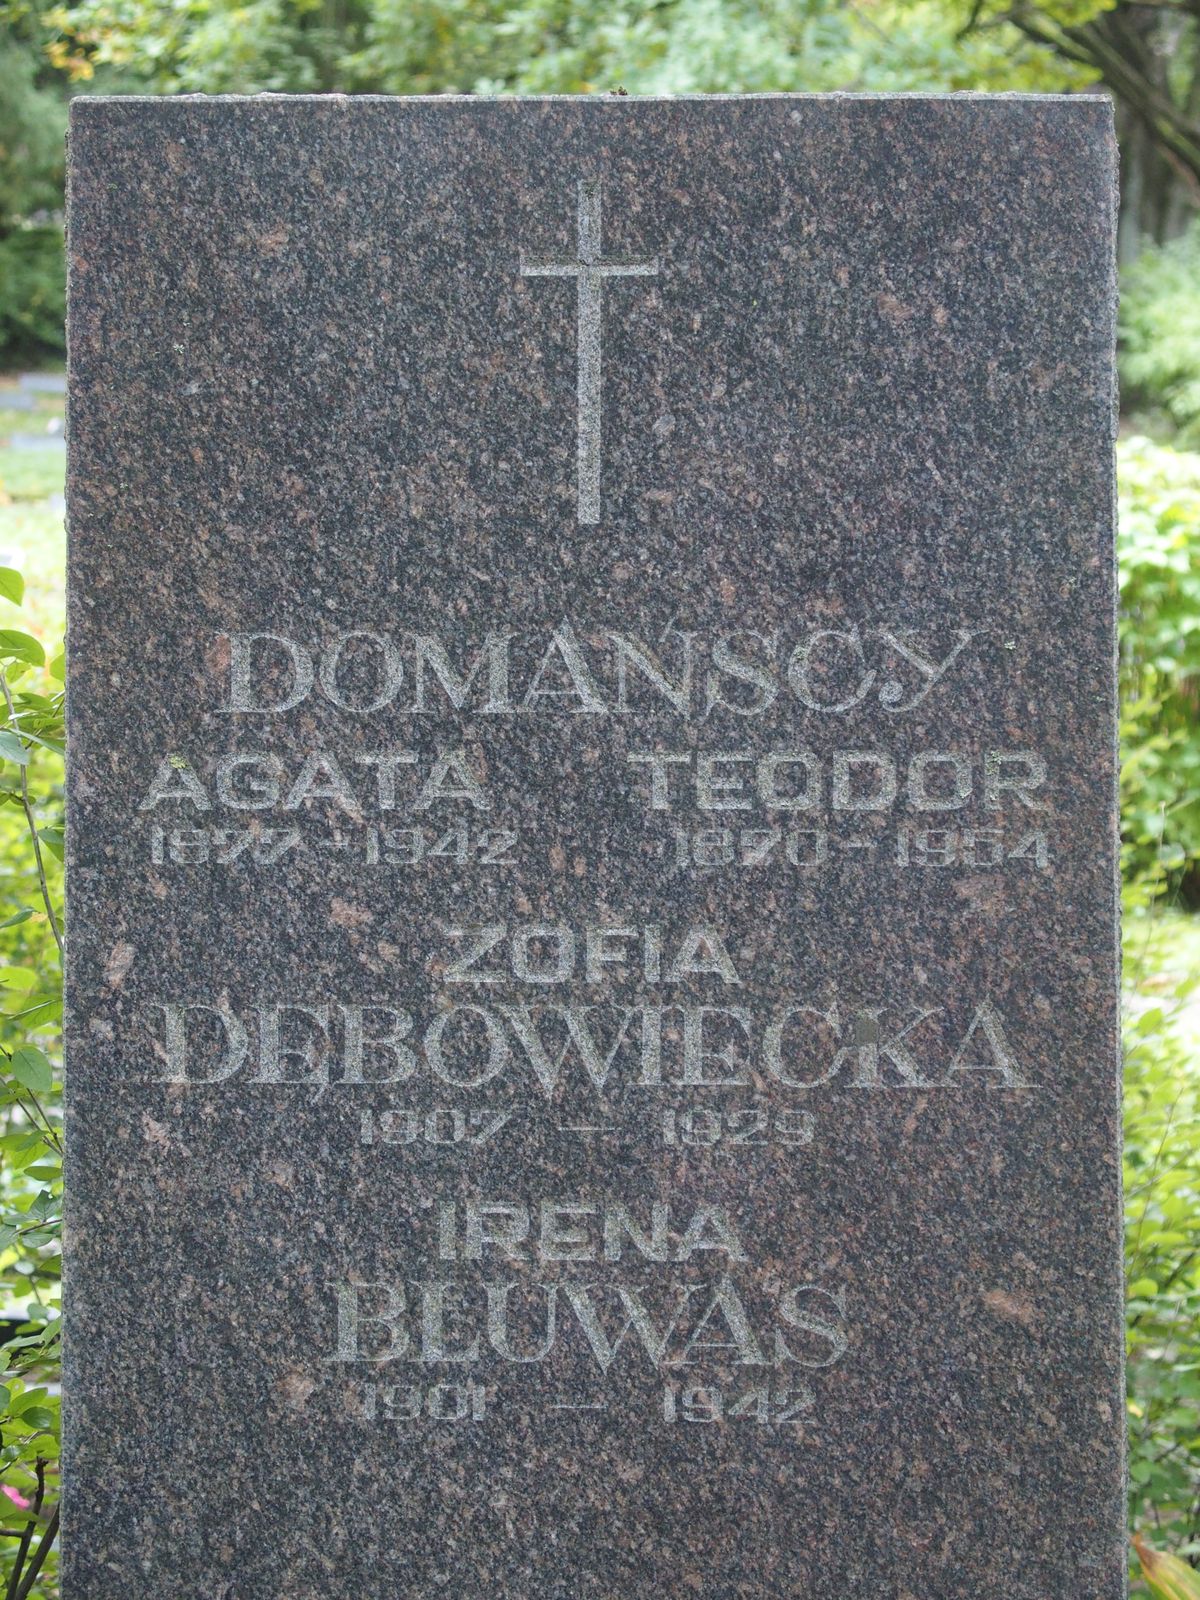 Inscription from the gravestone of Irena Bluwas, Zofia Debowiecka, Agata Domanska and Teodor Domanski, St Michael's cemetery in Riga, as of 2021.